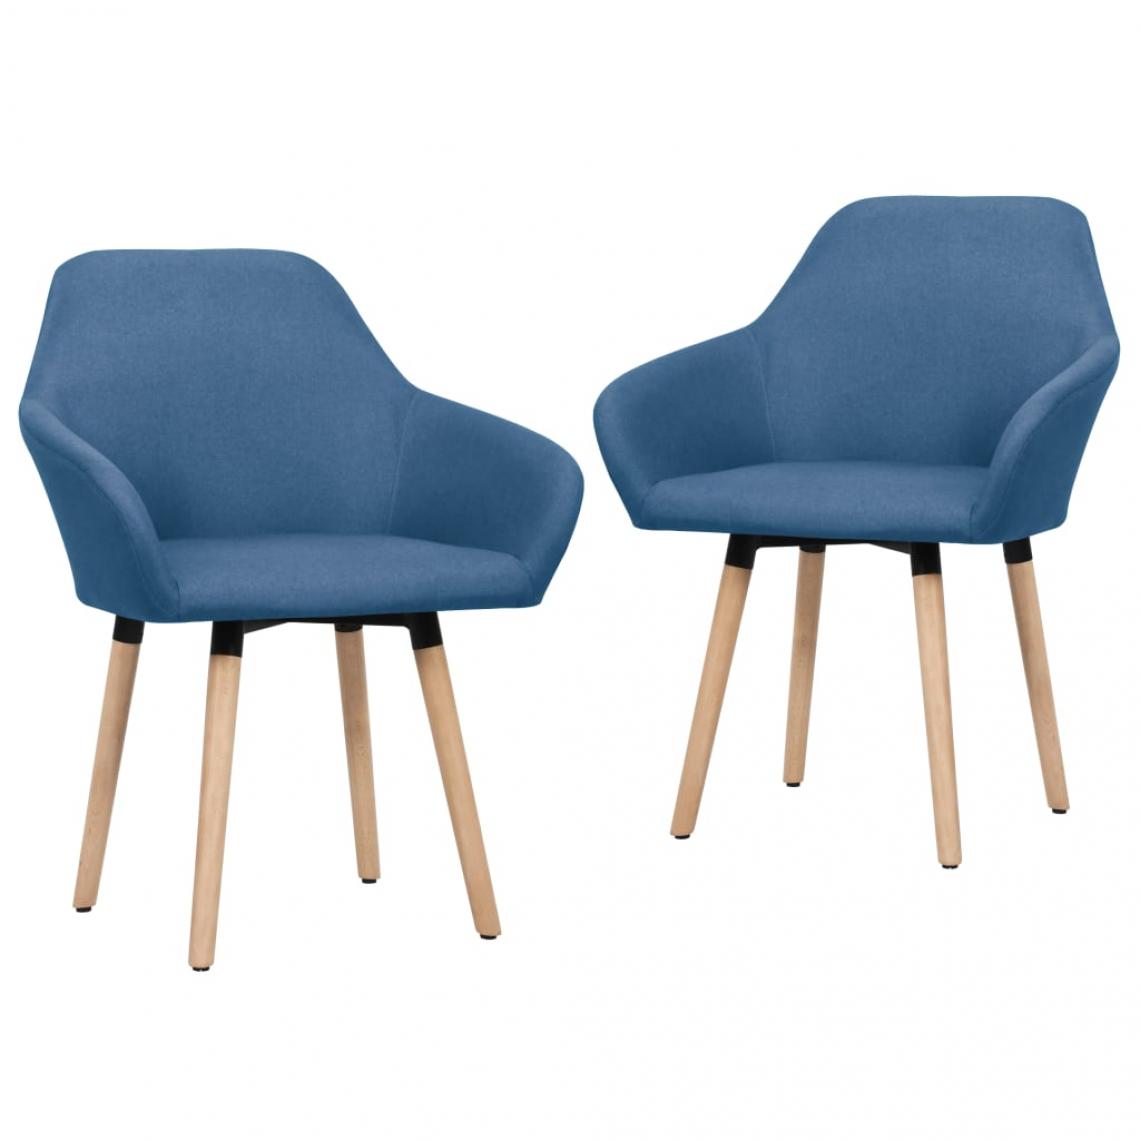 Decoshop26 - Lot de 2 chaises de salle à manger cuisine design moderne tissu bleu CDS020243 - Chaises